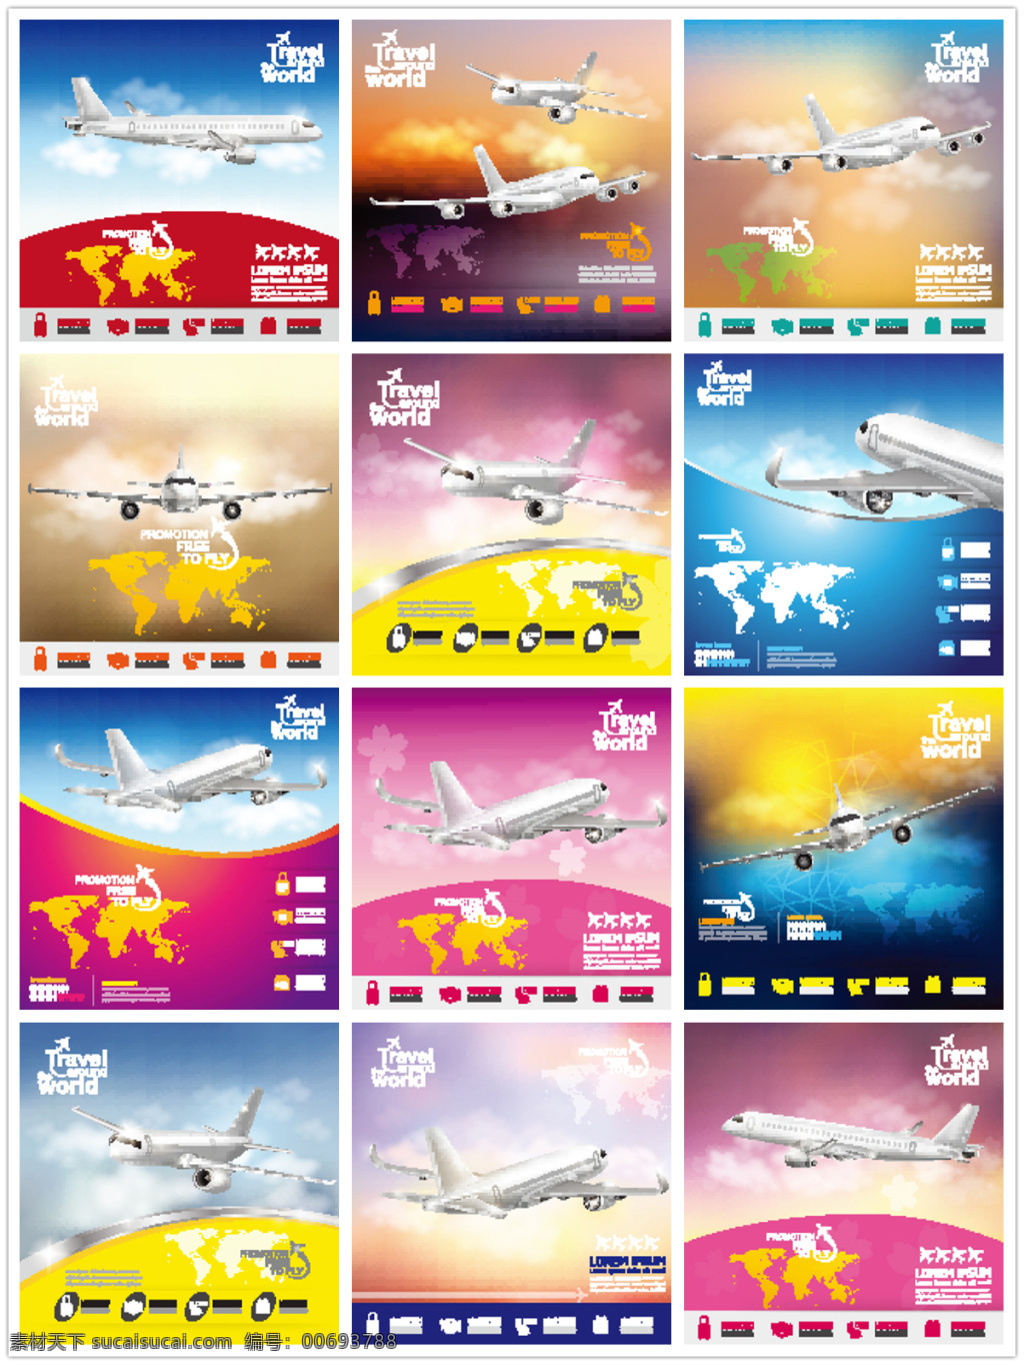 天空 中 飞机 图表 客机图标 飞机图片 客机 航空 阳光 云彩 云层 飞机摄影 交通工具 现代科技 信息 广告素材 世界地图 矢量素材 白色